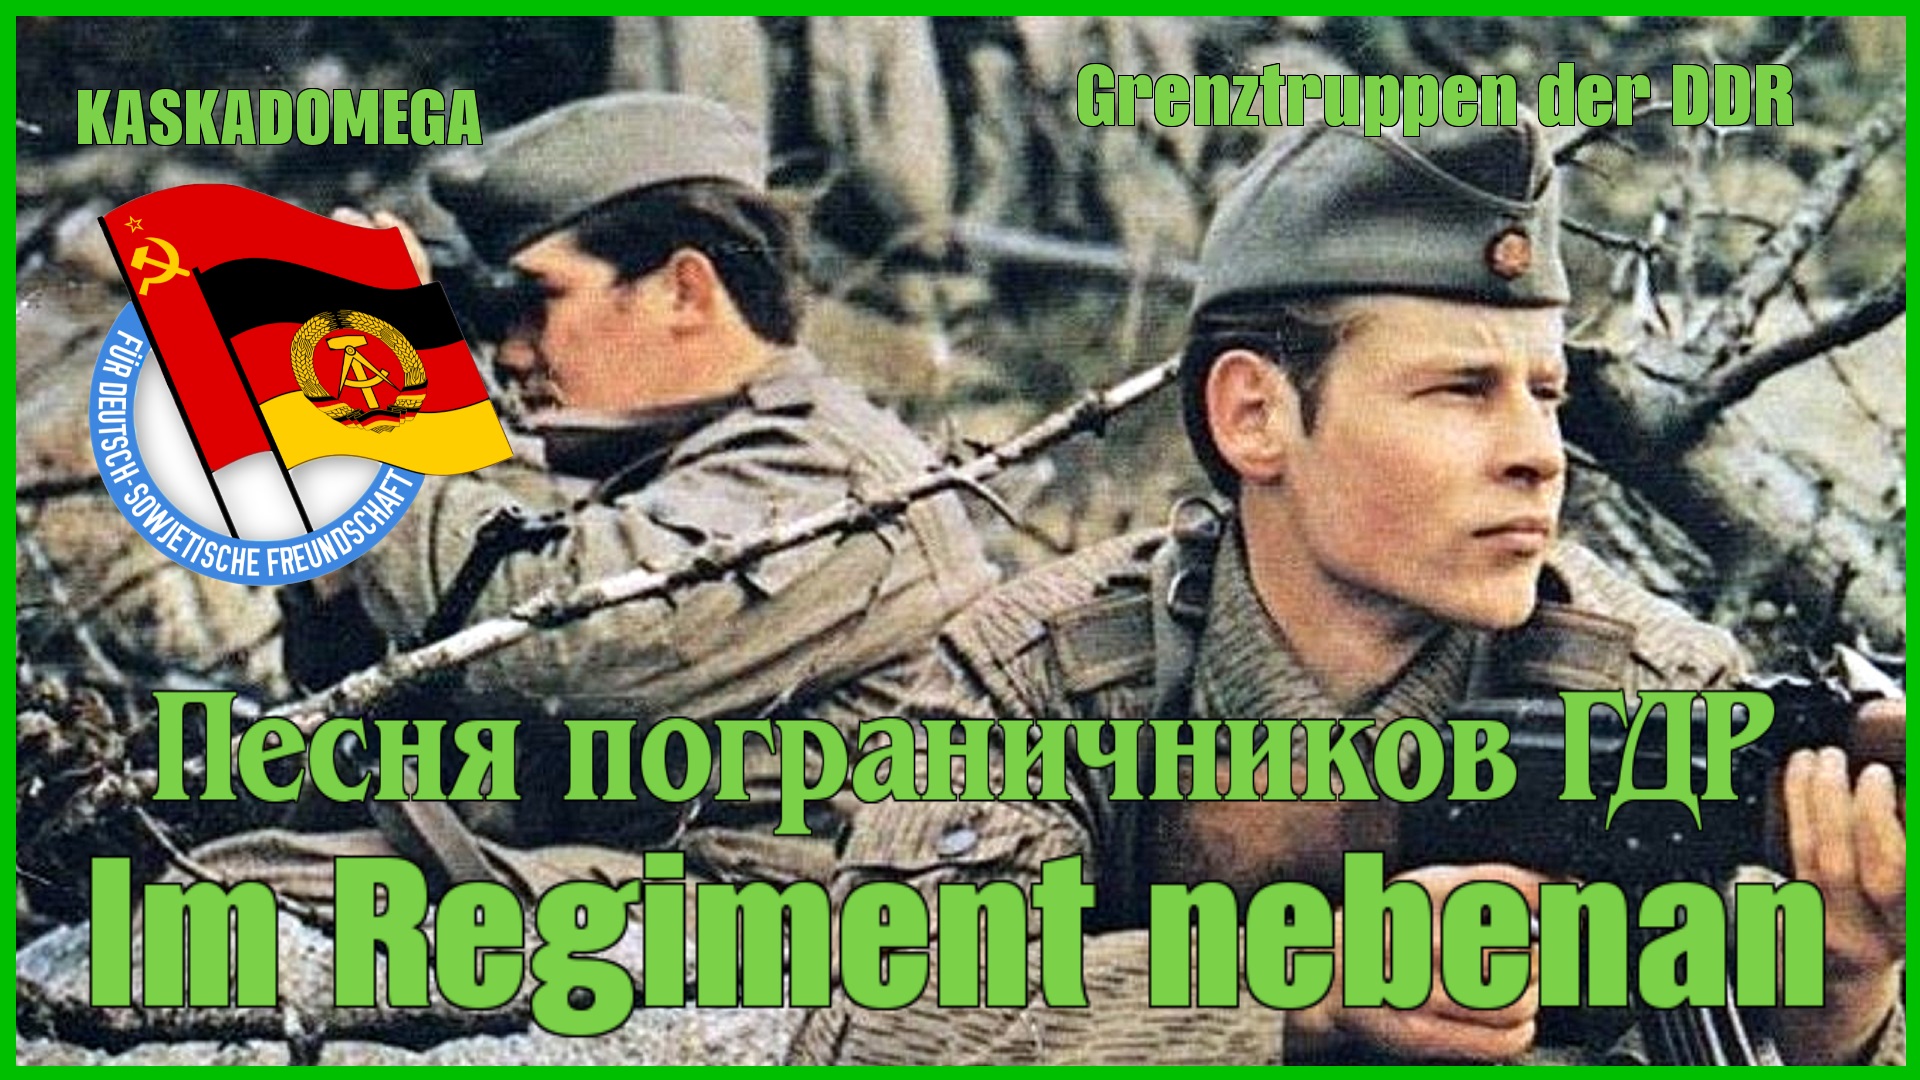 В соседнем полку / Im Regiment nebenan (1985)